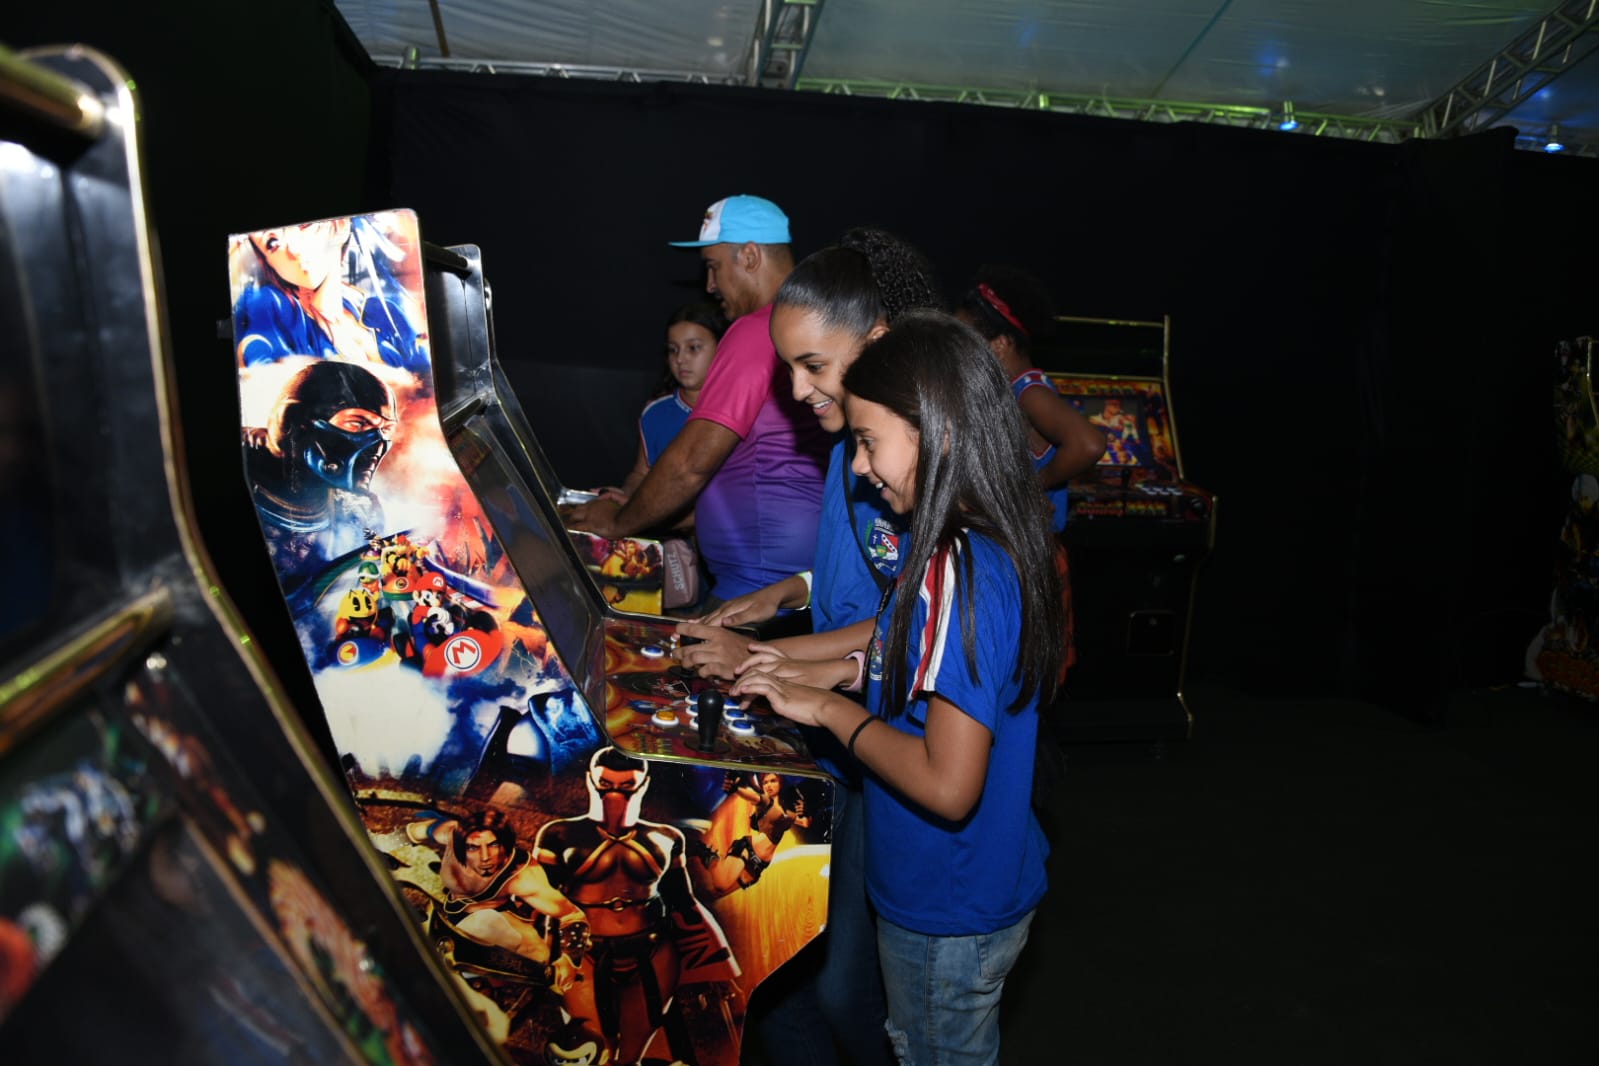 Maior feira de jogos eletrônicos da região, “Maricá Games” começa